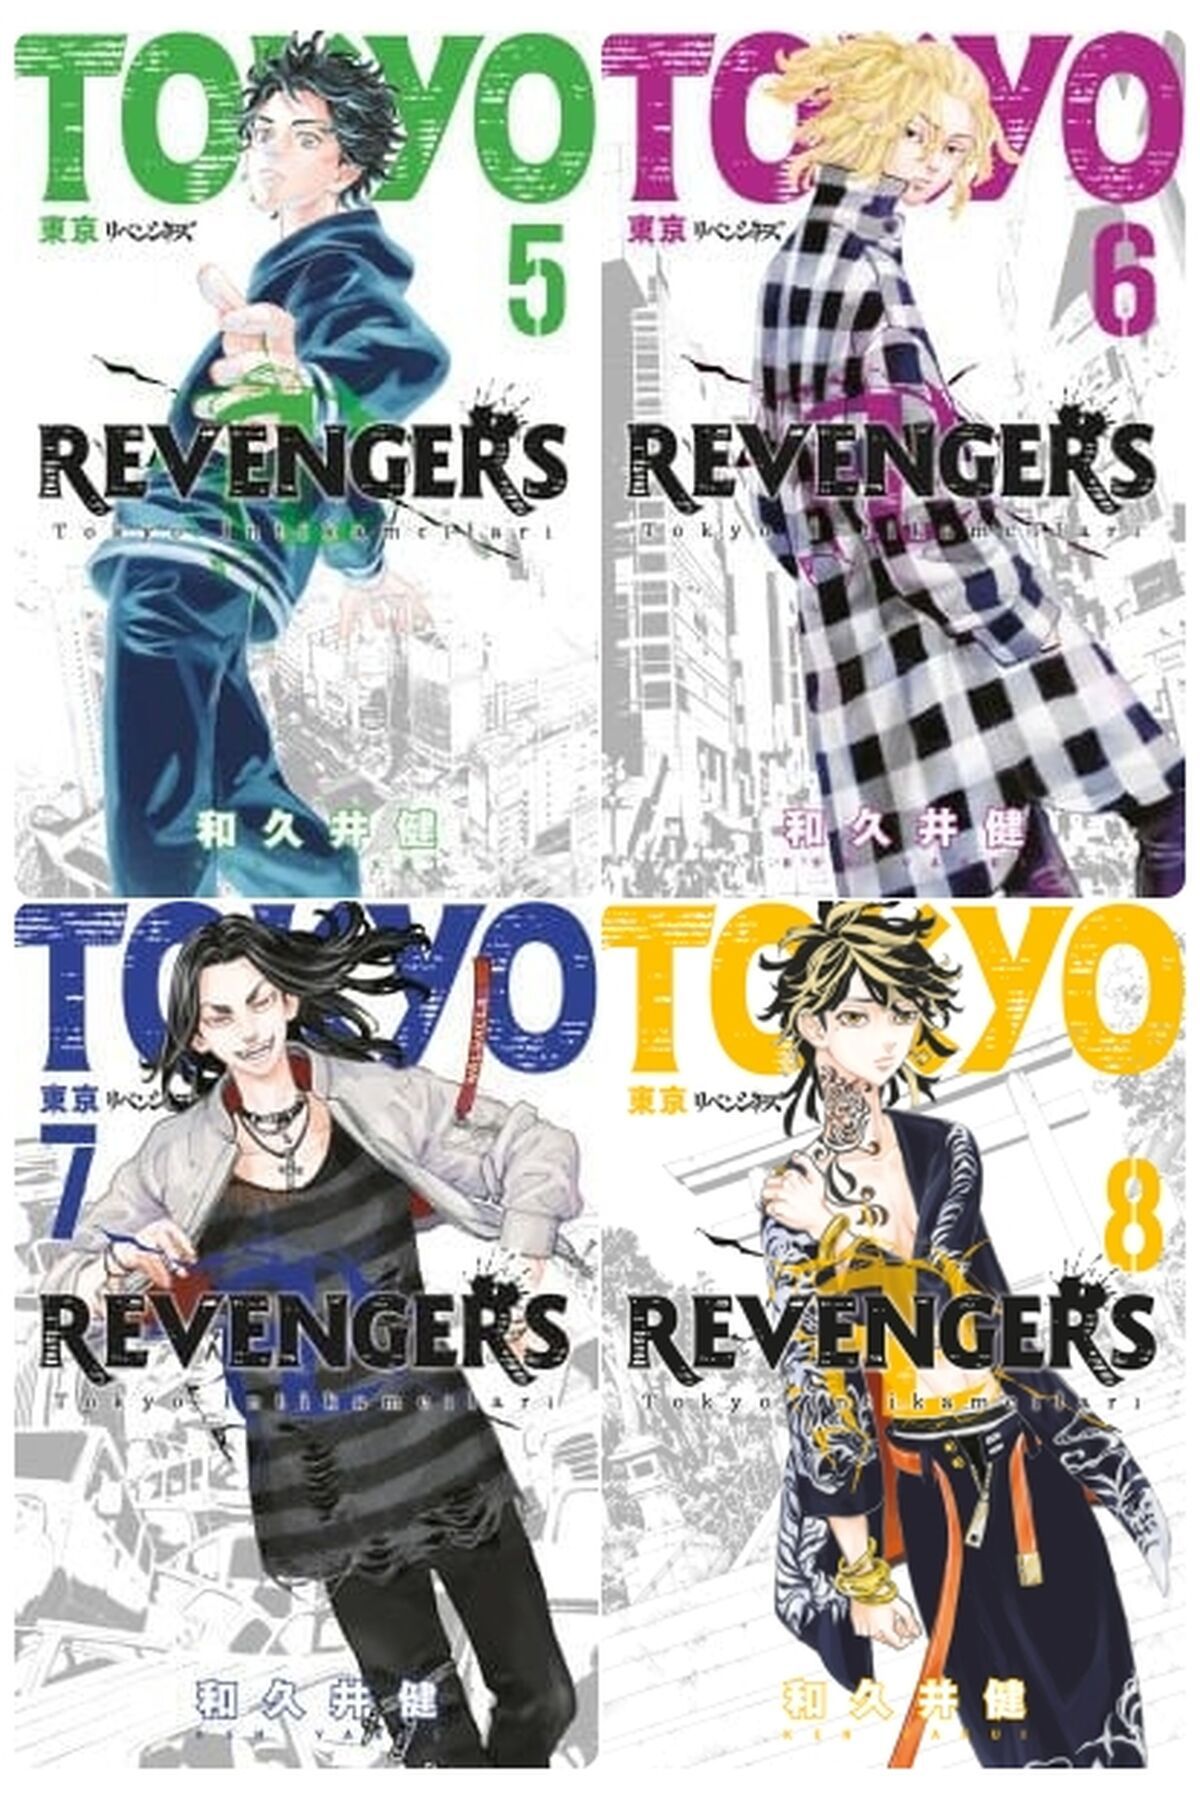 Gerekli Şeyler Yayıncılık Tokyo Revengers 5-6-7-8 manga seti (4 kitap)